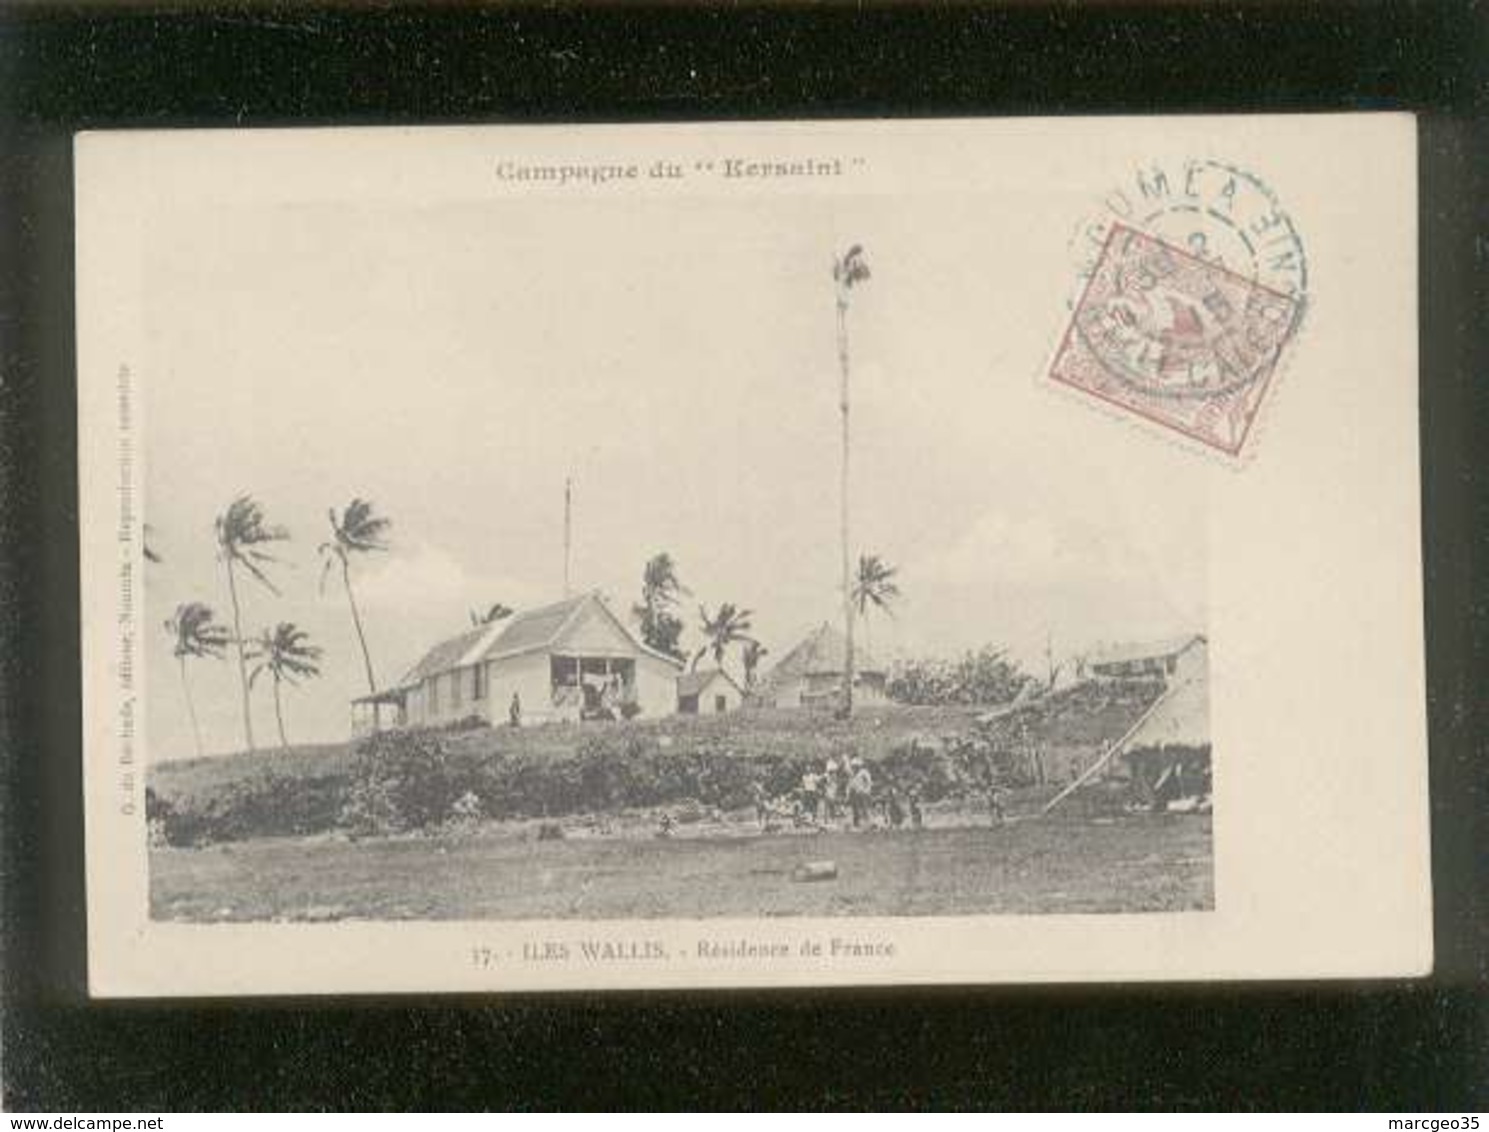 Campagne Du Kersaint Iles Wallis Résidence De France édit. G. De Béchade N° 37 - Wallis And Futuna